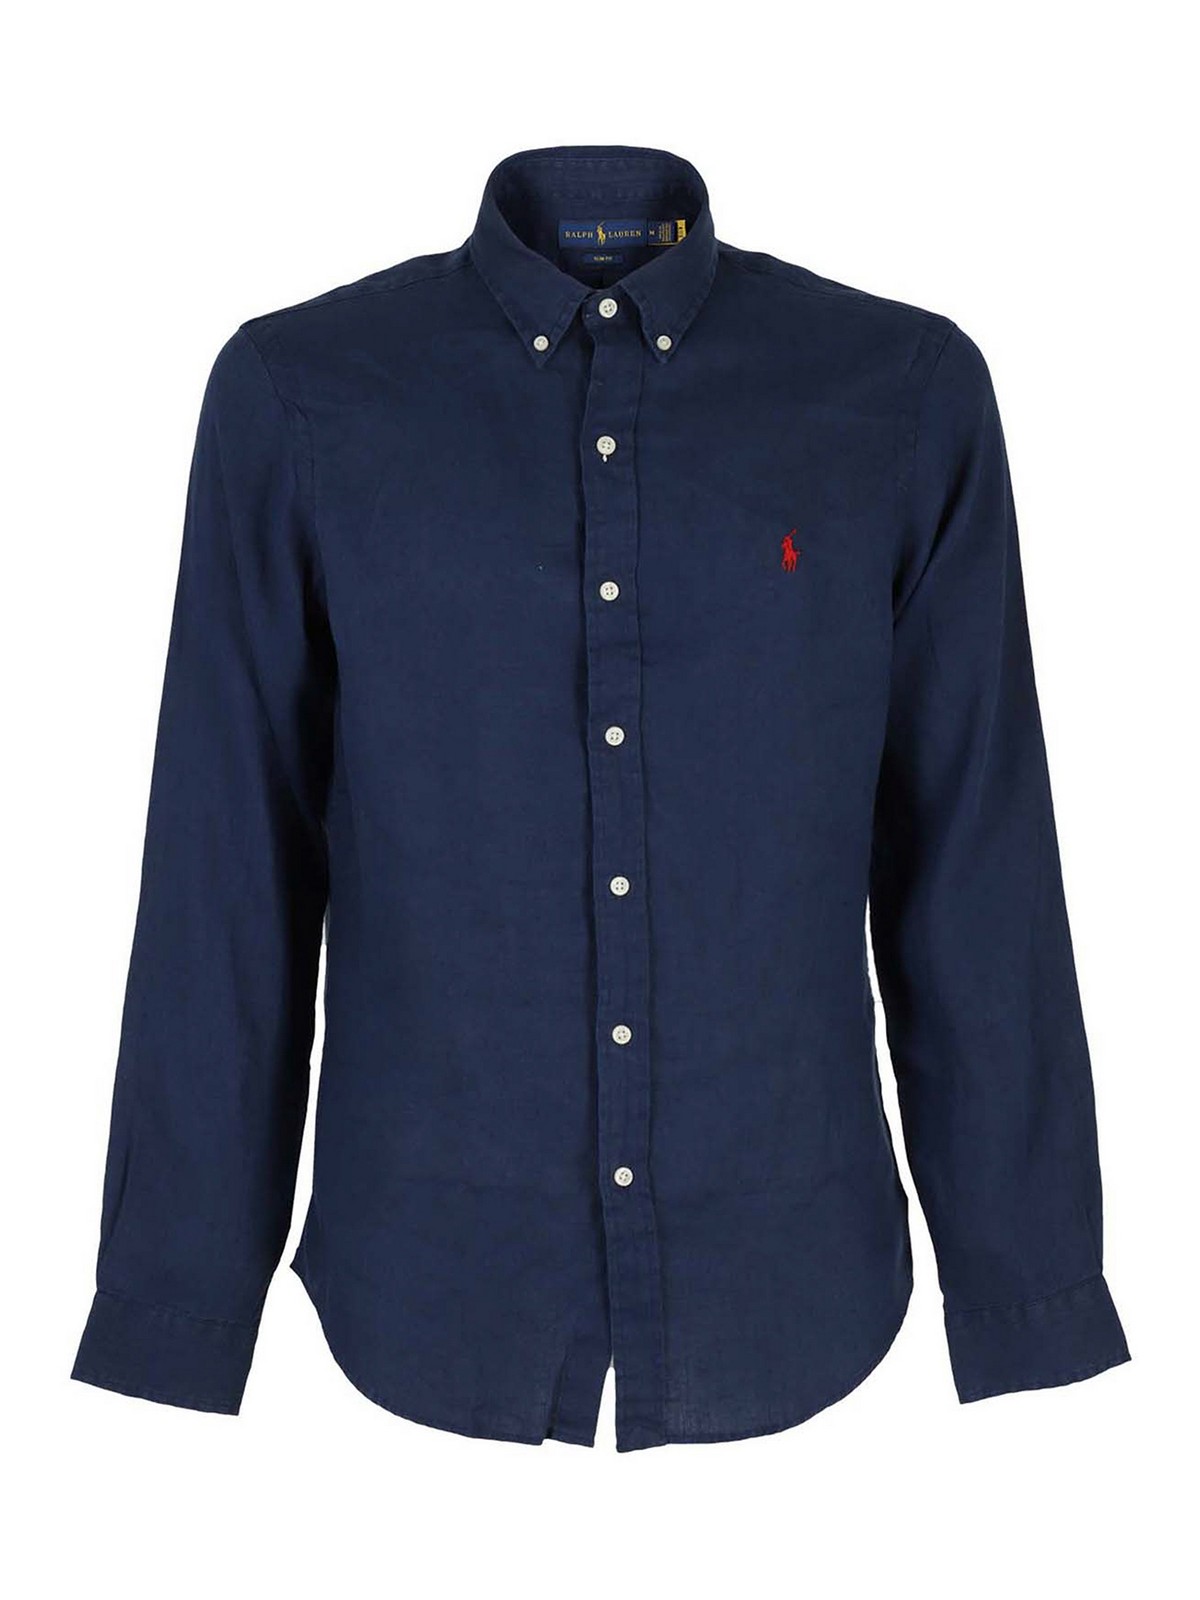 Shirts Polo Ralph Lauren - Linen shirt - 710829443001 | iKRIX.com